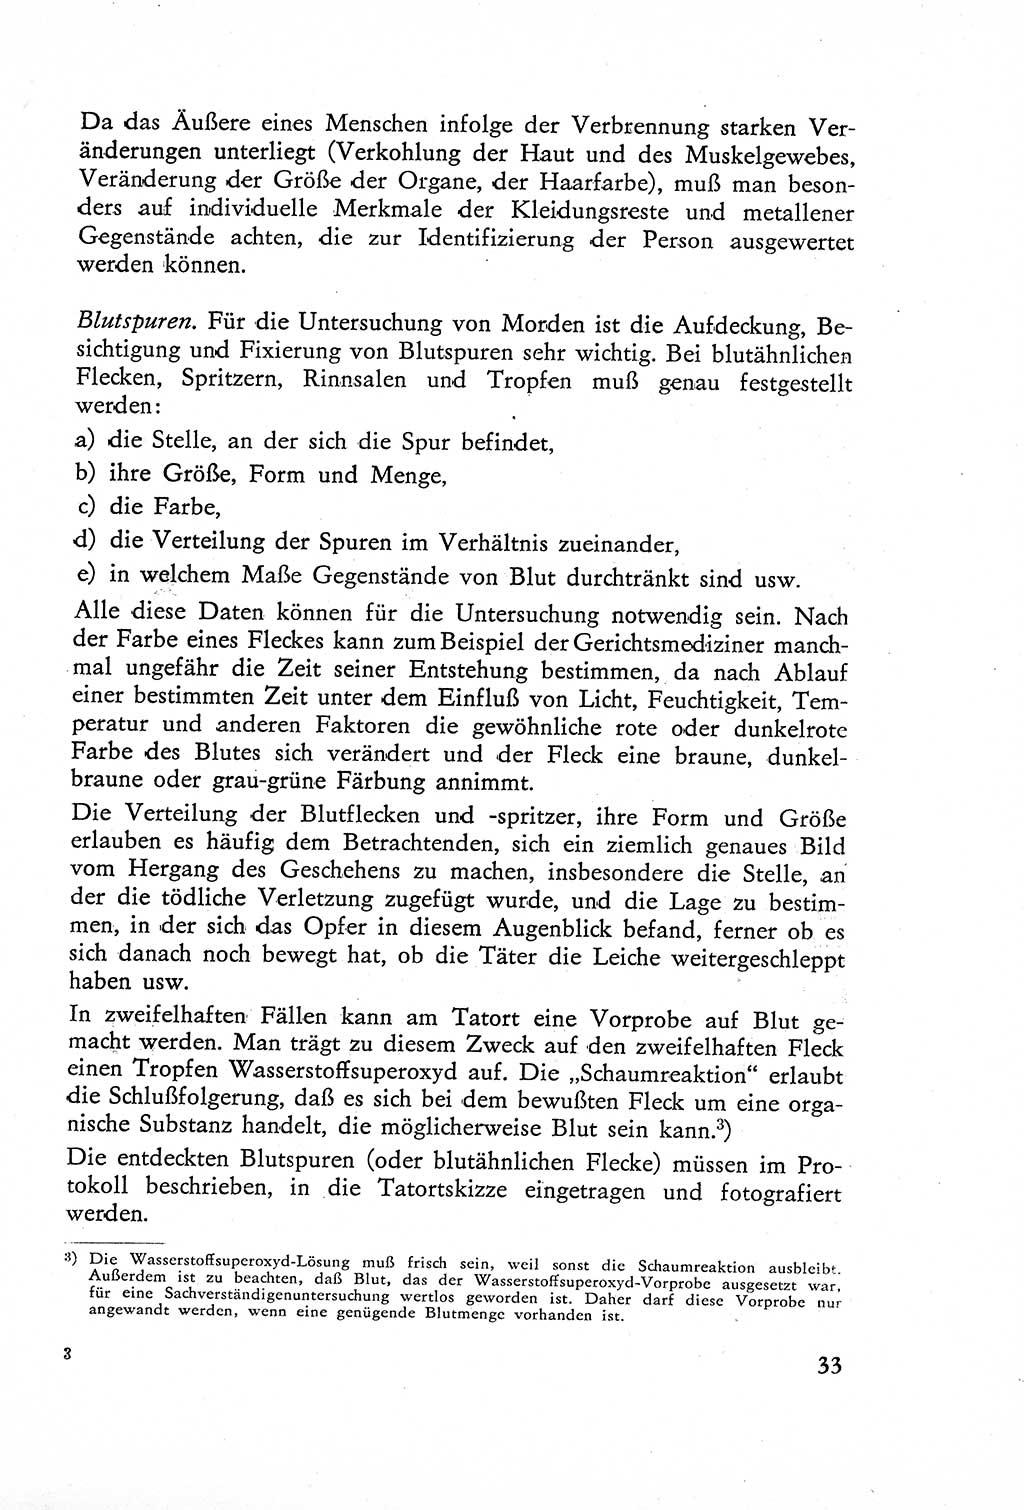 Die Untersuchung einzelner Verbrechensarten [Deutsche Demokratische Republik (DDR)] 1960, Seite 33 (Unters. Verbr.-Art. DDR 1960, S. 33)